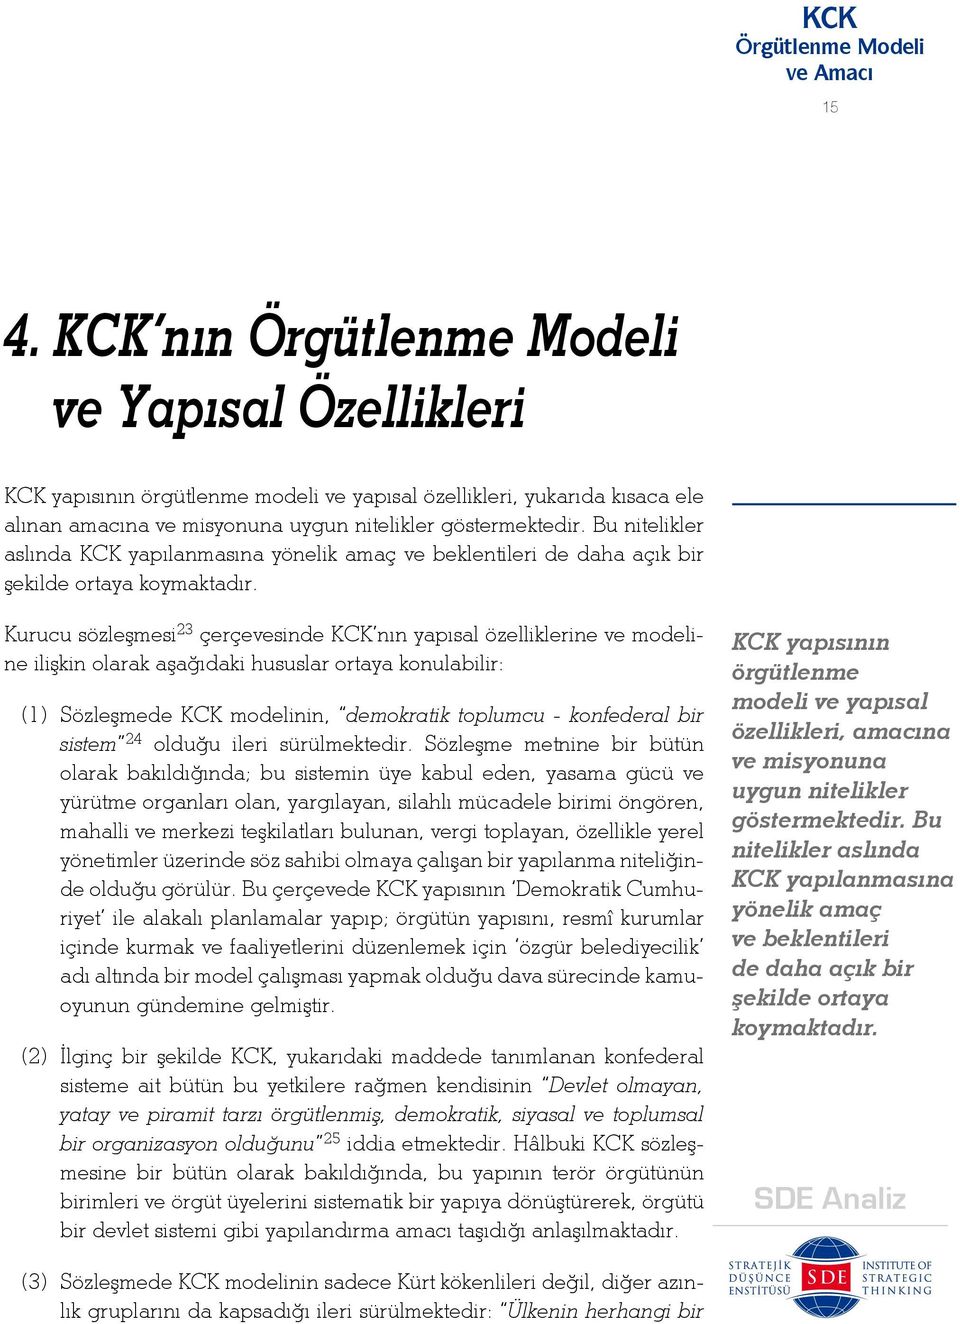 Kurucu sözleşmesi 23 çerçevesinde KCK nın yapısal özelliklerine ve modeline ilişkin olarak aşağıdaki hususlar ortaya konulabilir: (1) Sözleşmede KCK modelinin, demokratik toplumcu - konfederal bir